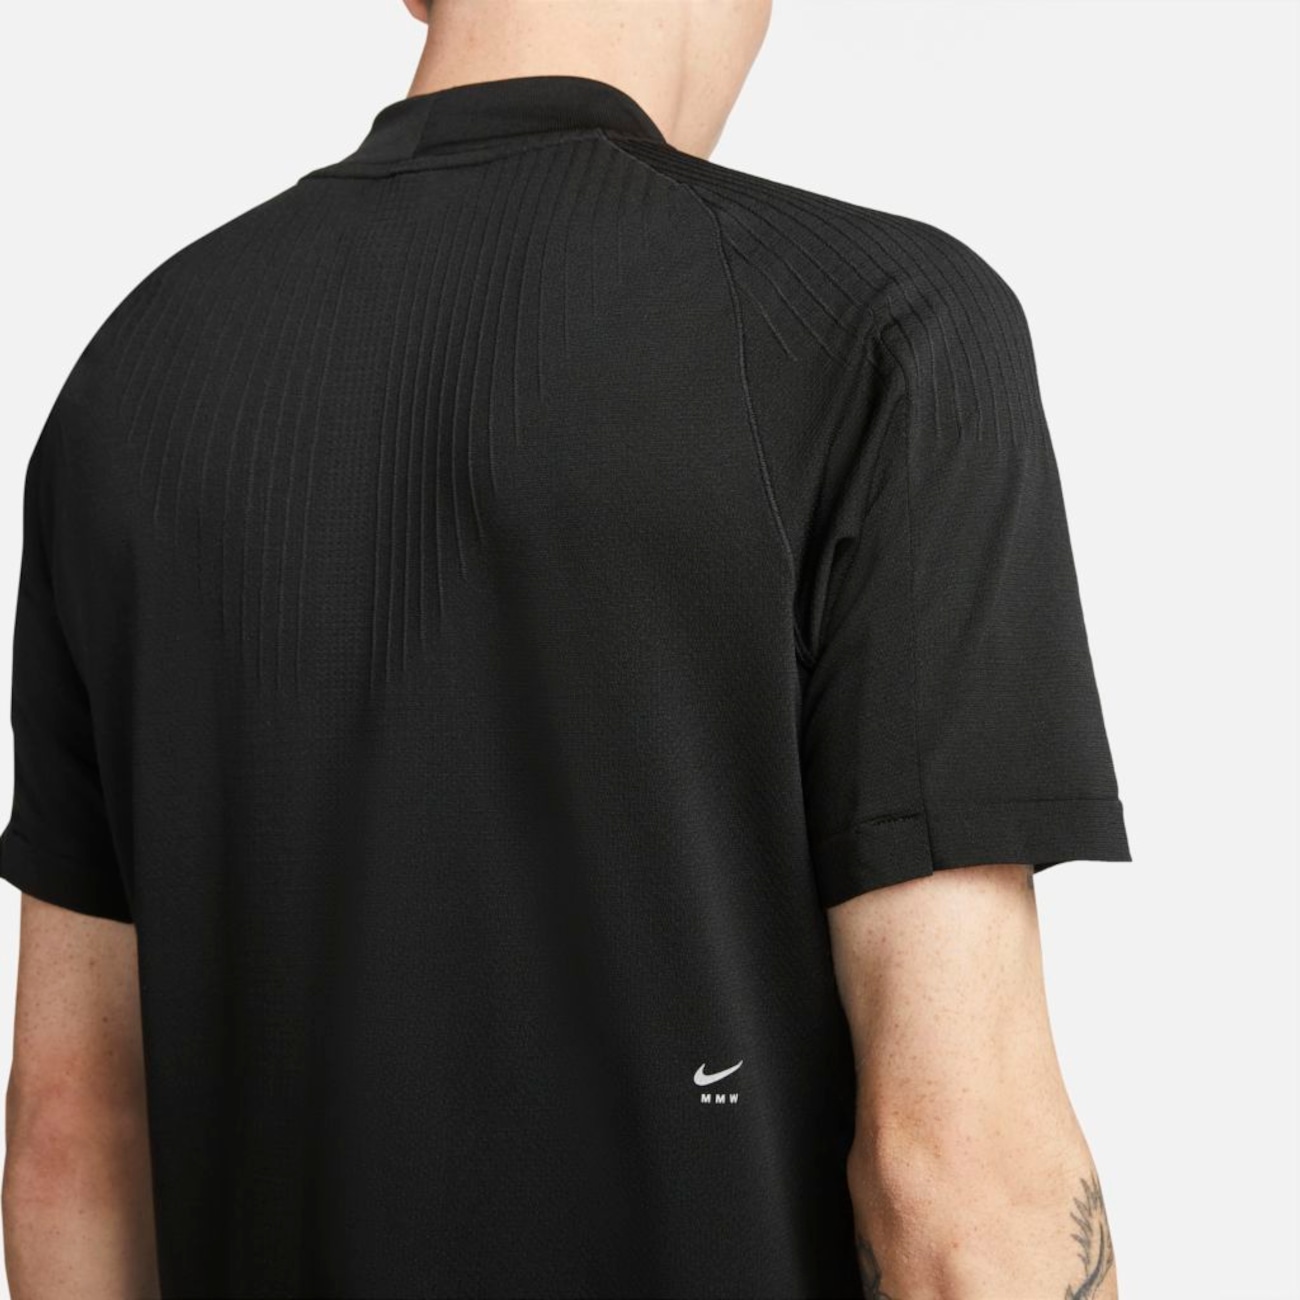 Camiseta Nike x MMW Masculina - Foto 4